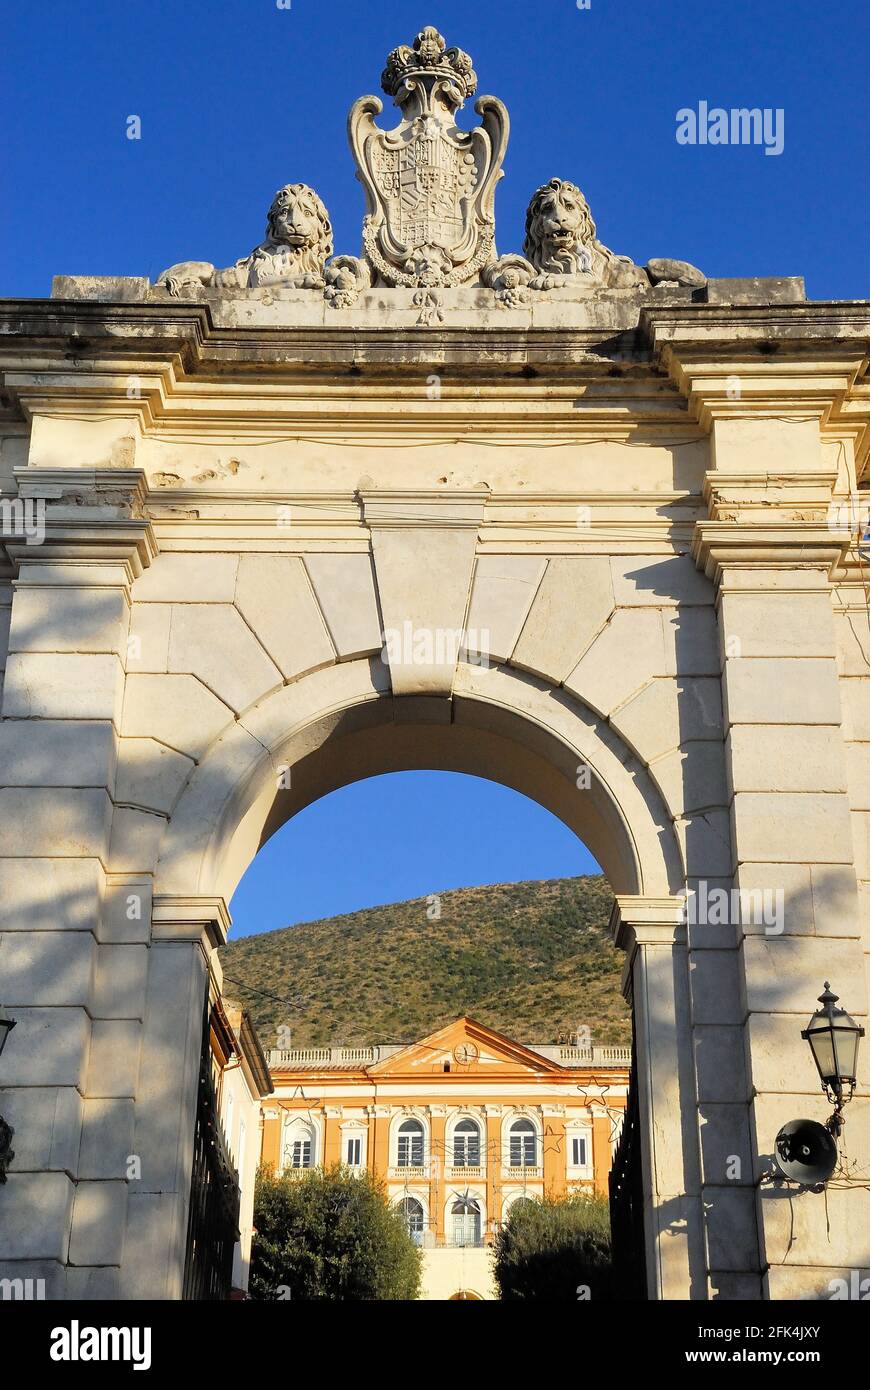 San Leucio, Caserta, Italia. È incluso nell'elenco dei siti patrimonio mondiale dell'UNESCO nel 1997. Facciata dell'entrata. Foto Stock